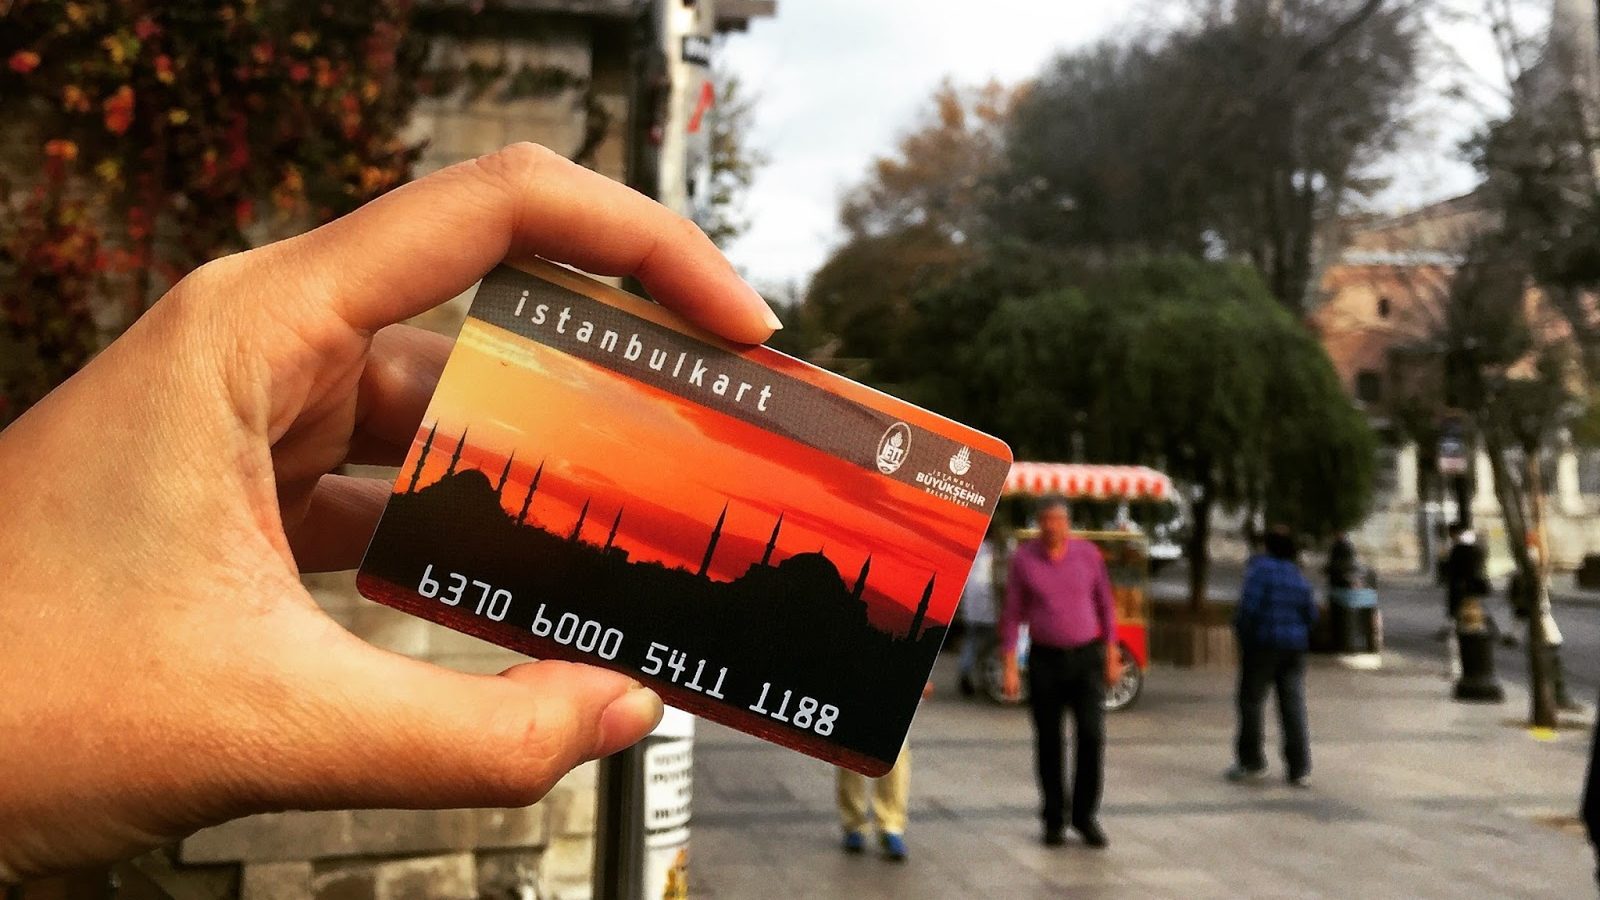 Ulaşımda tek kart dönemi için İstanbulkart, Türkiyekart oluyor